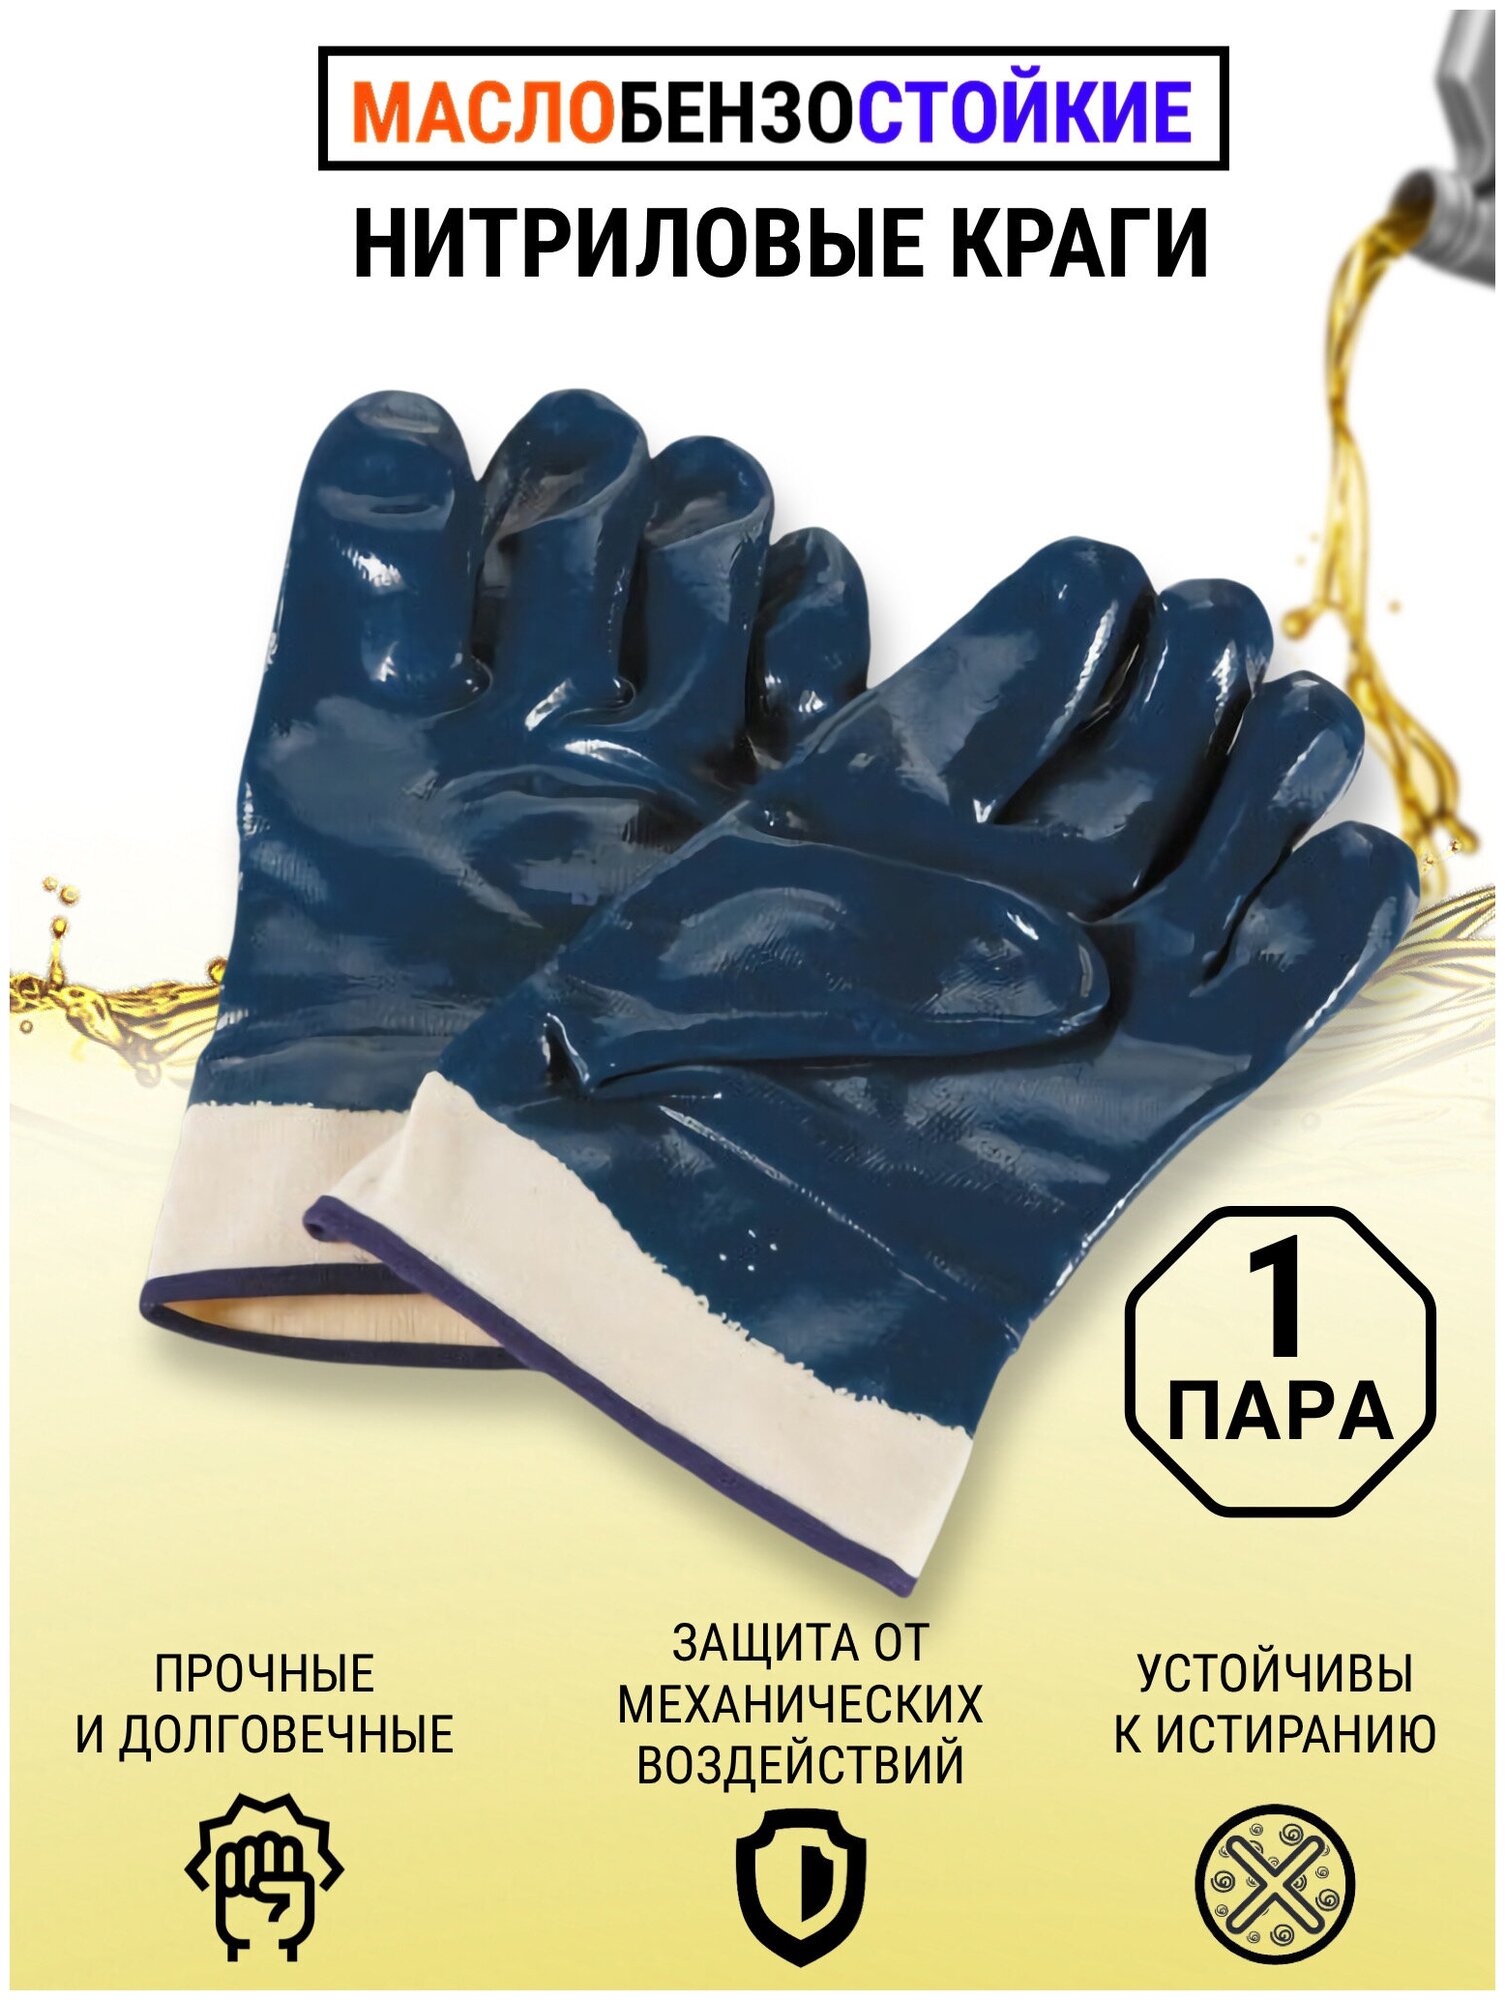 Перчатки МБС Краги синие нитриловые маслобензостойкие рабочие хозяйственные 1 пара